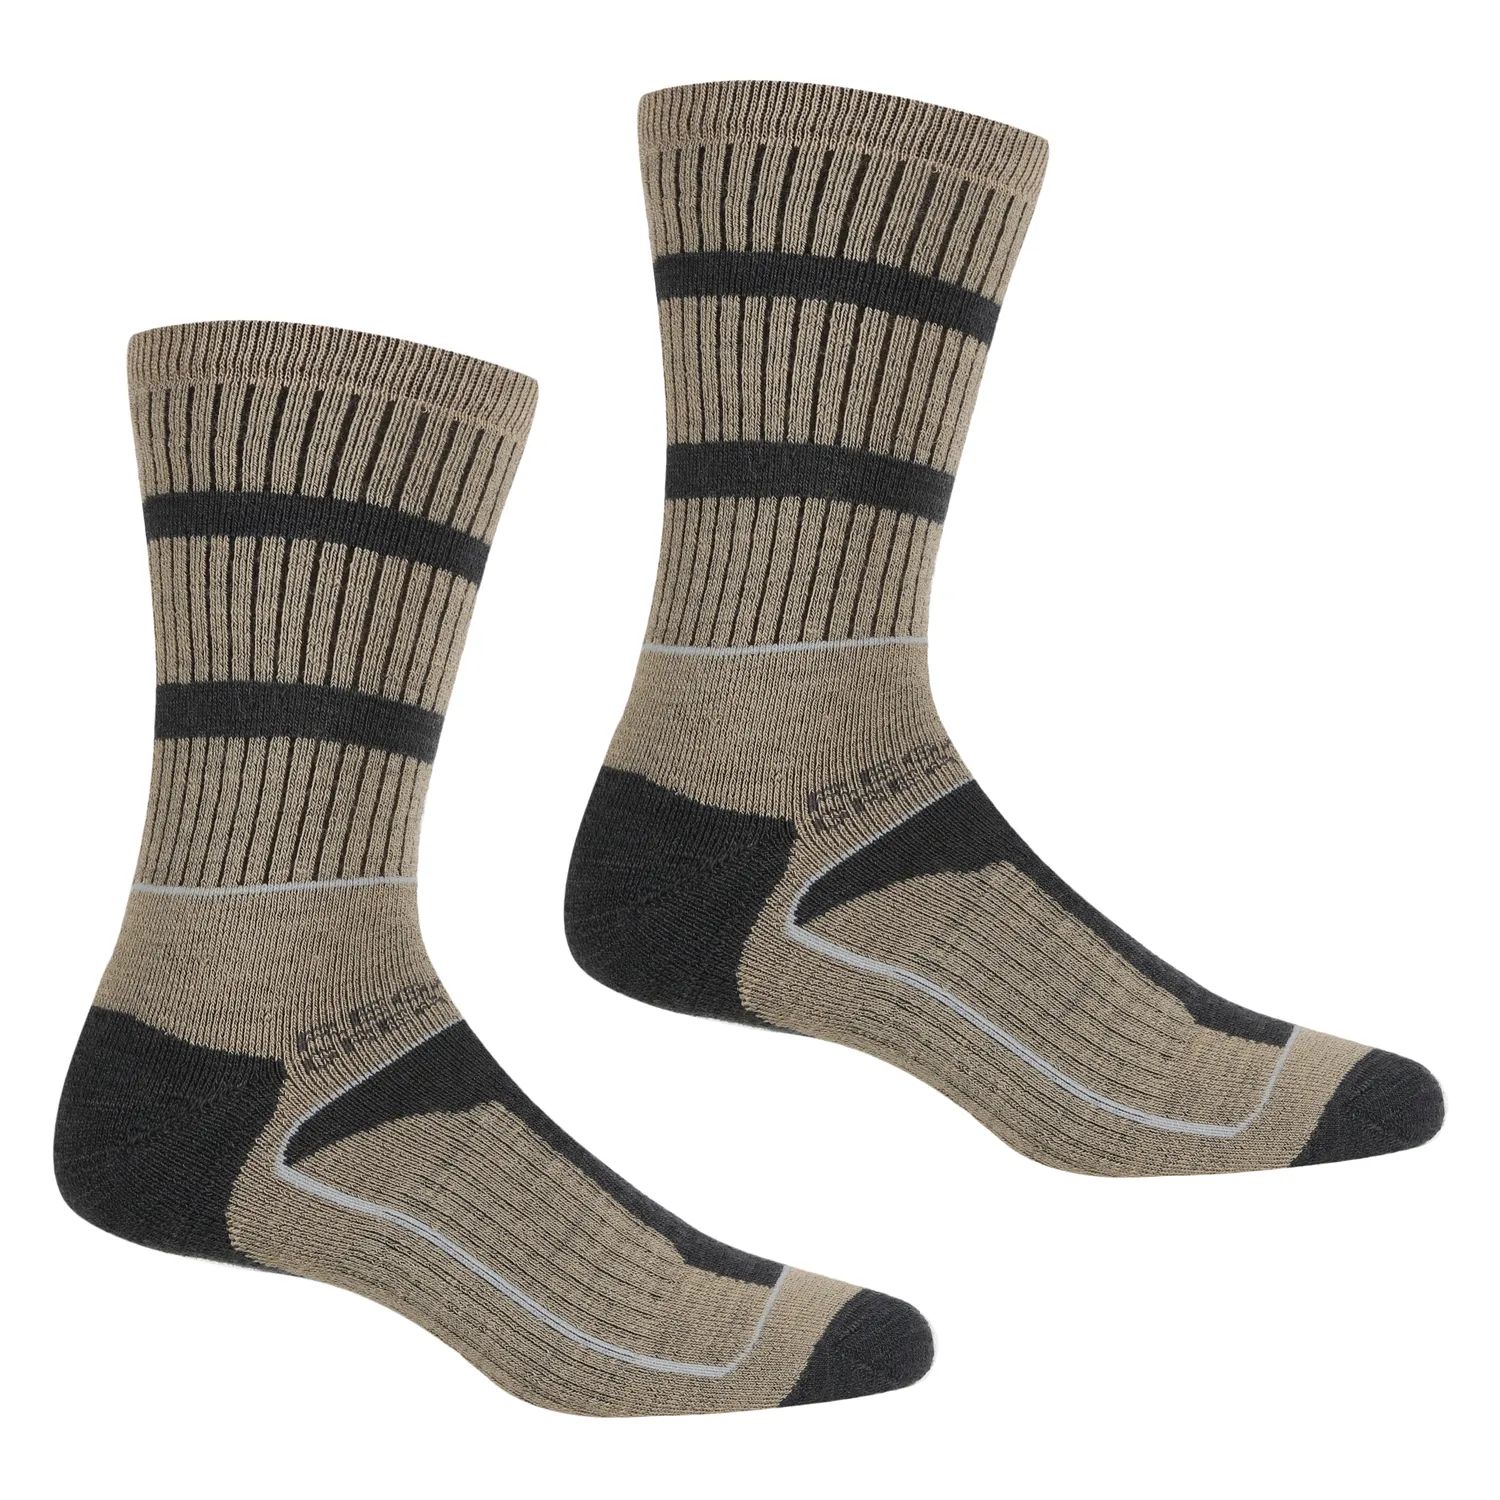 Regatta Samaris 3 Season Walking Socks (Mocassin/Briar)